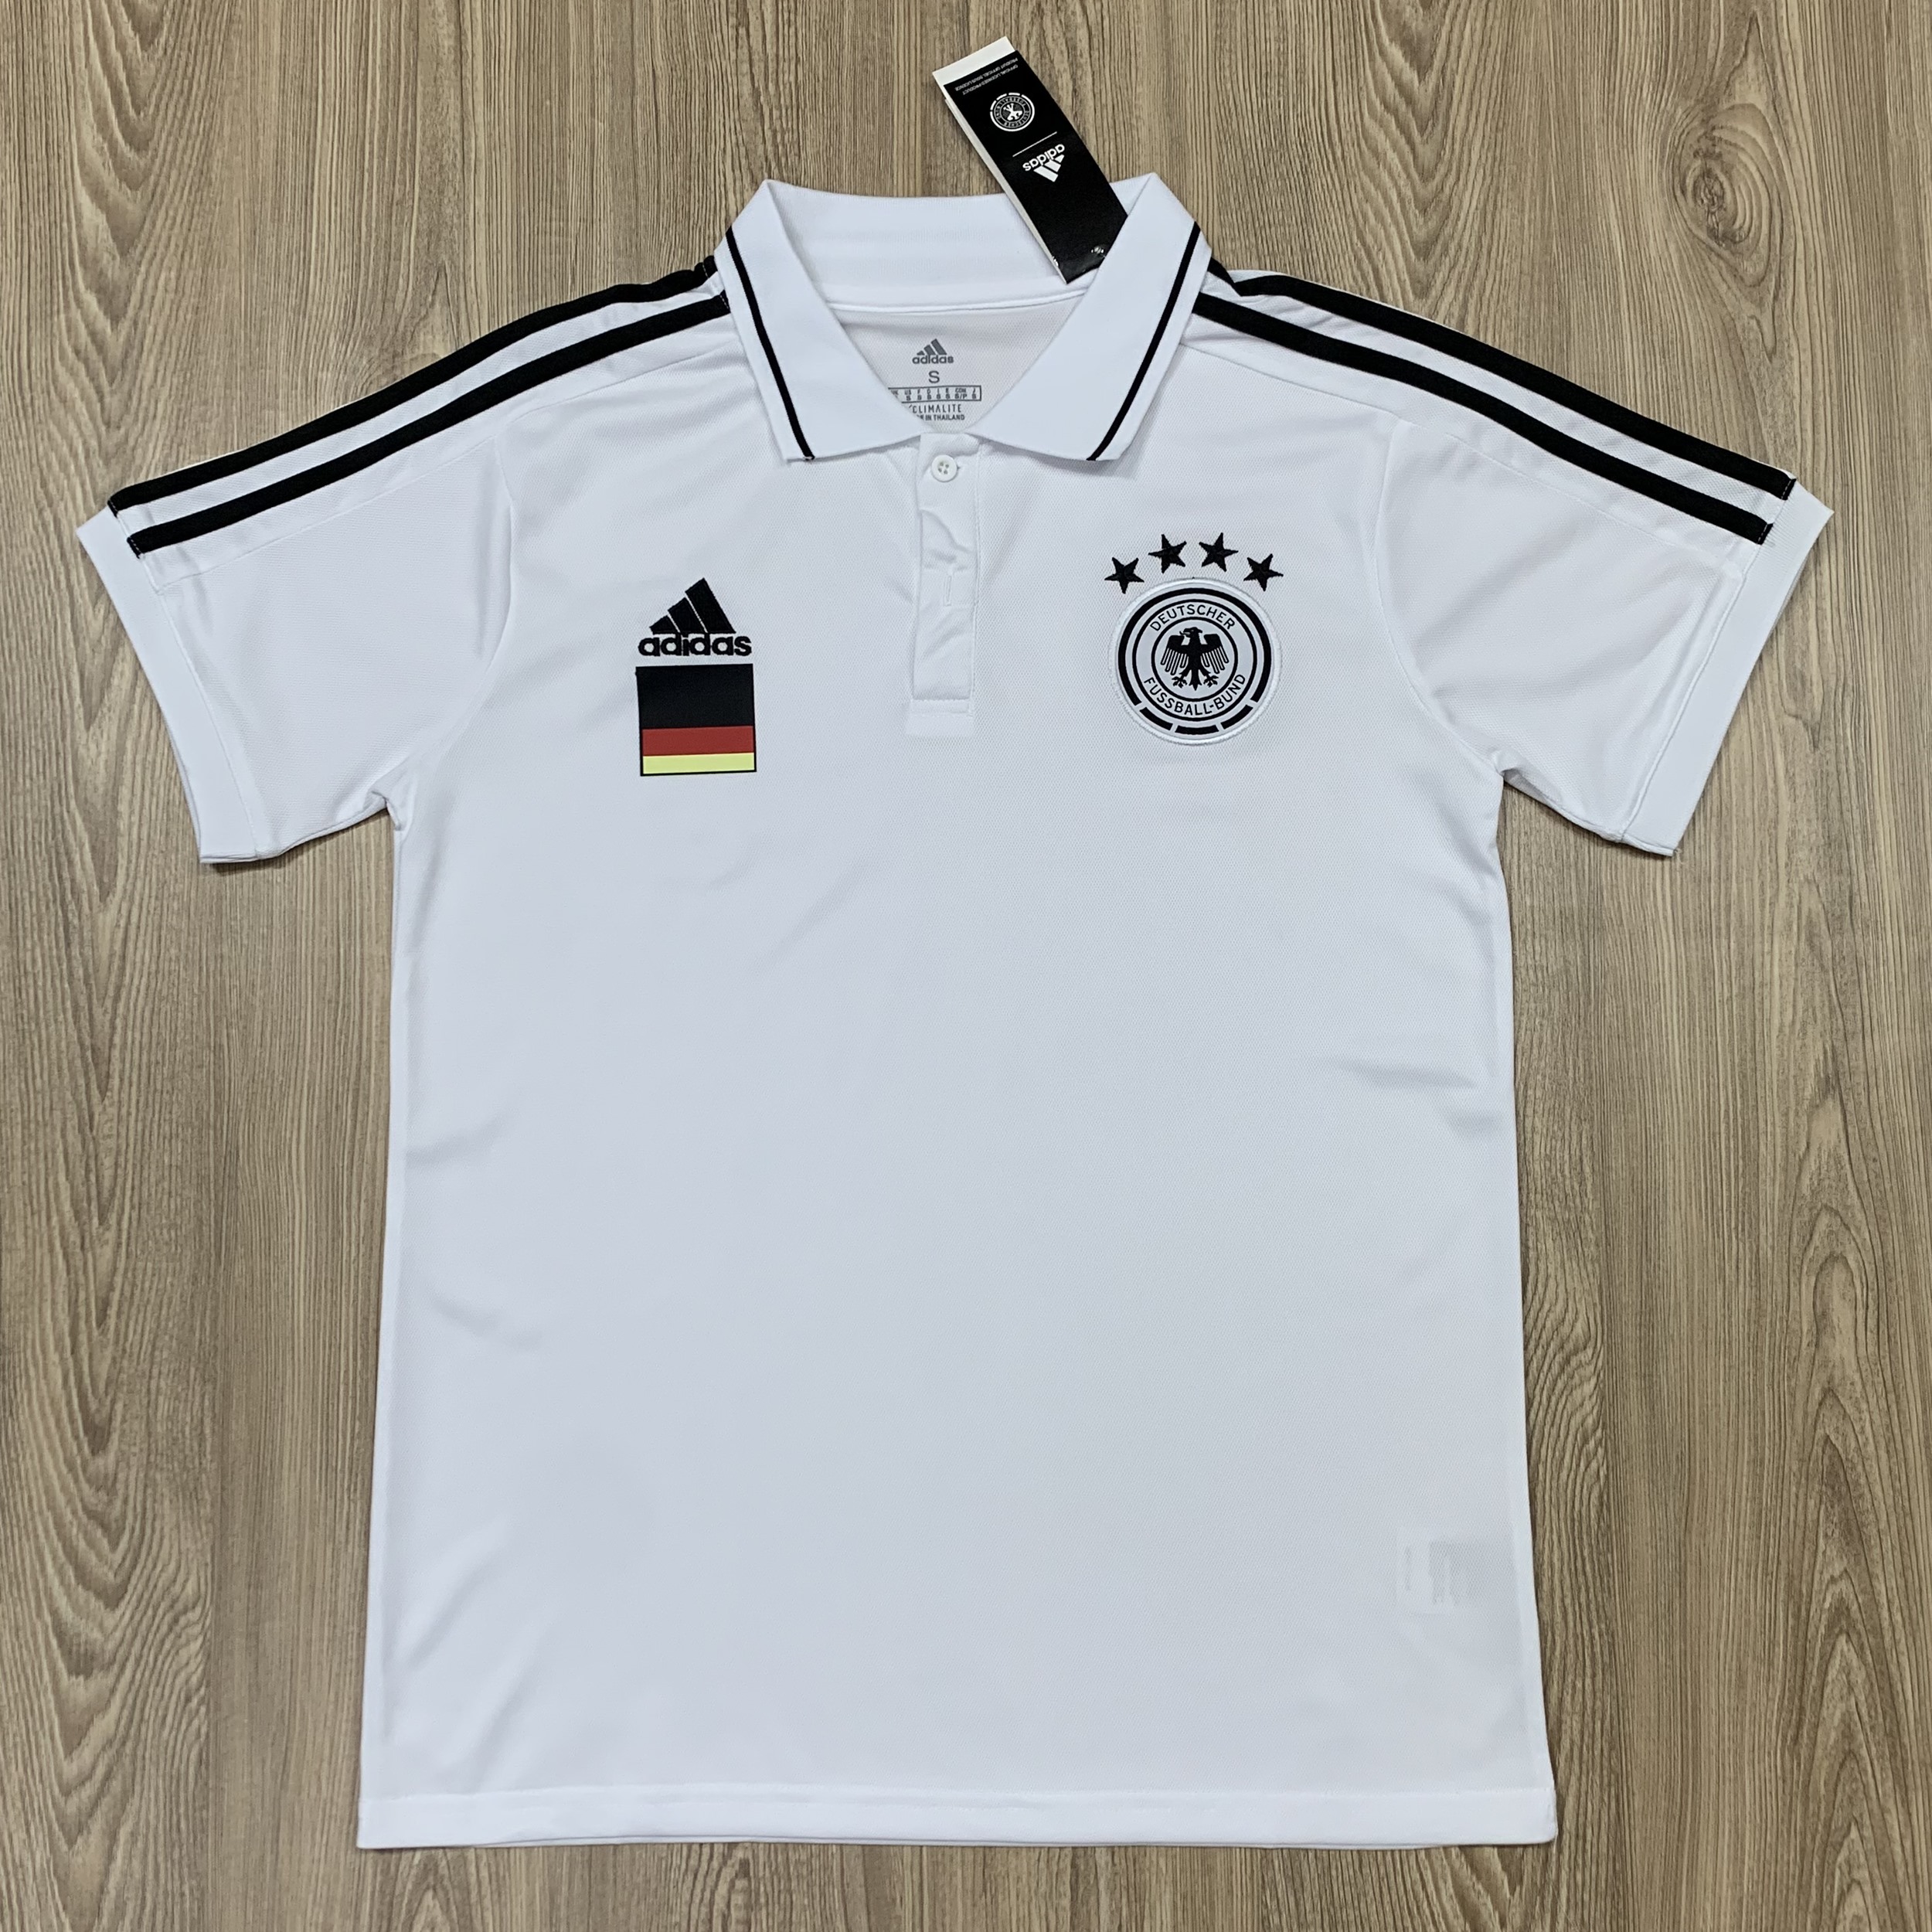 ใหม่!! Germany FOOTBALL SHIRT SOCCER JERSEY เสื้อบอล เสื้อฟุตบอลชาย เสื้อฟุตบอล เสื้อทีม เยอรมนี ฤดูกาล เกรด AAA